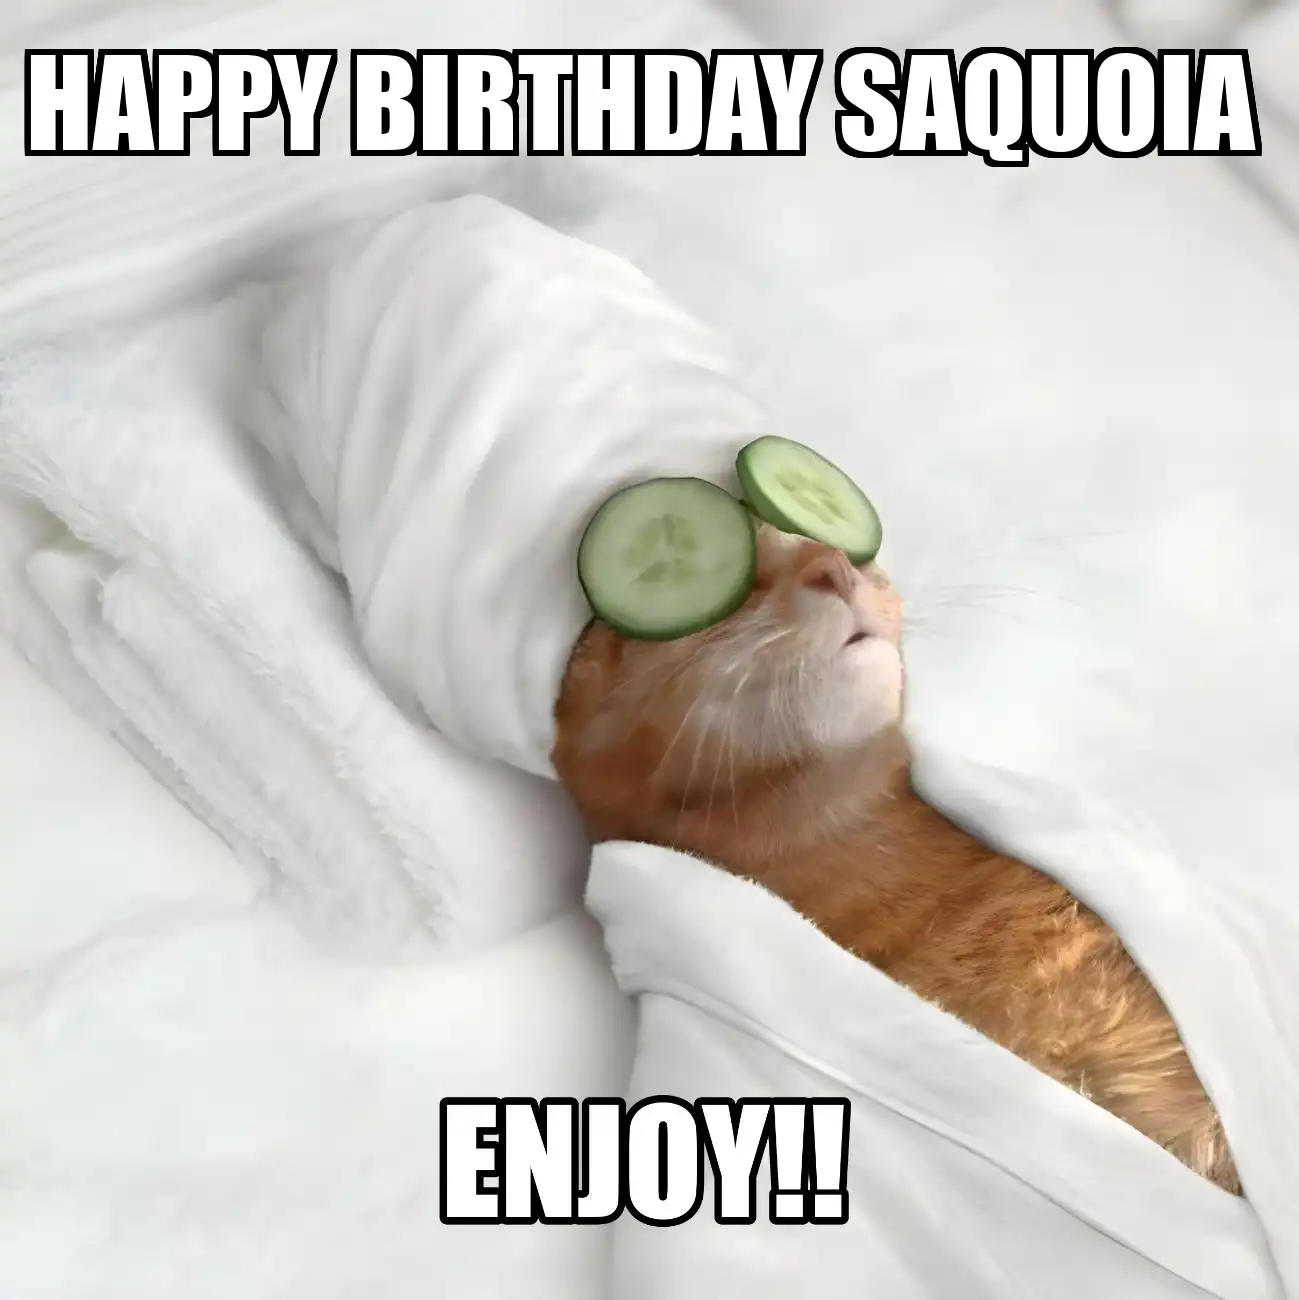 Happy Birthday Saquoia Enjoy Cat Meme